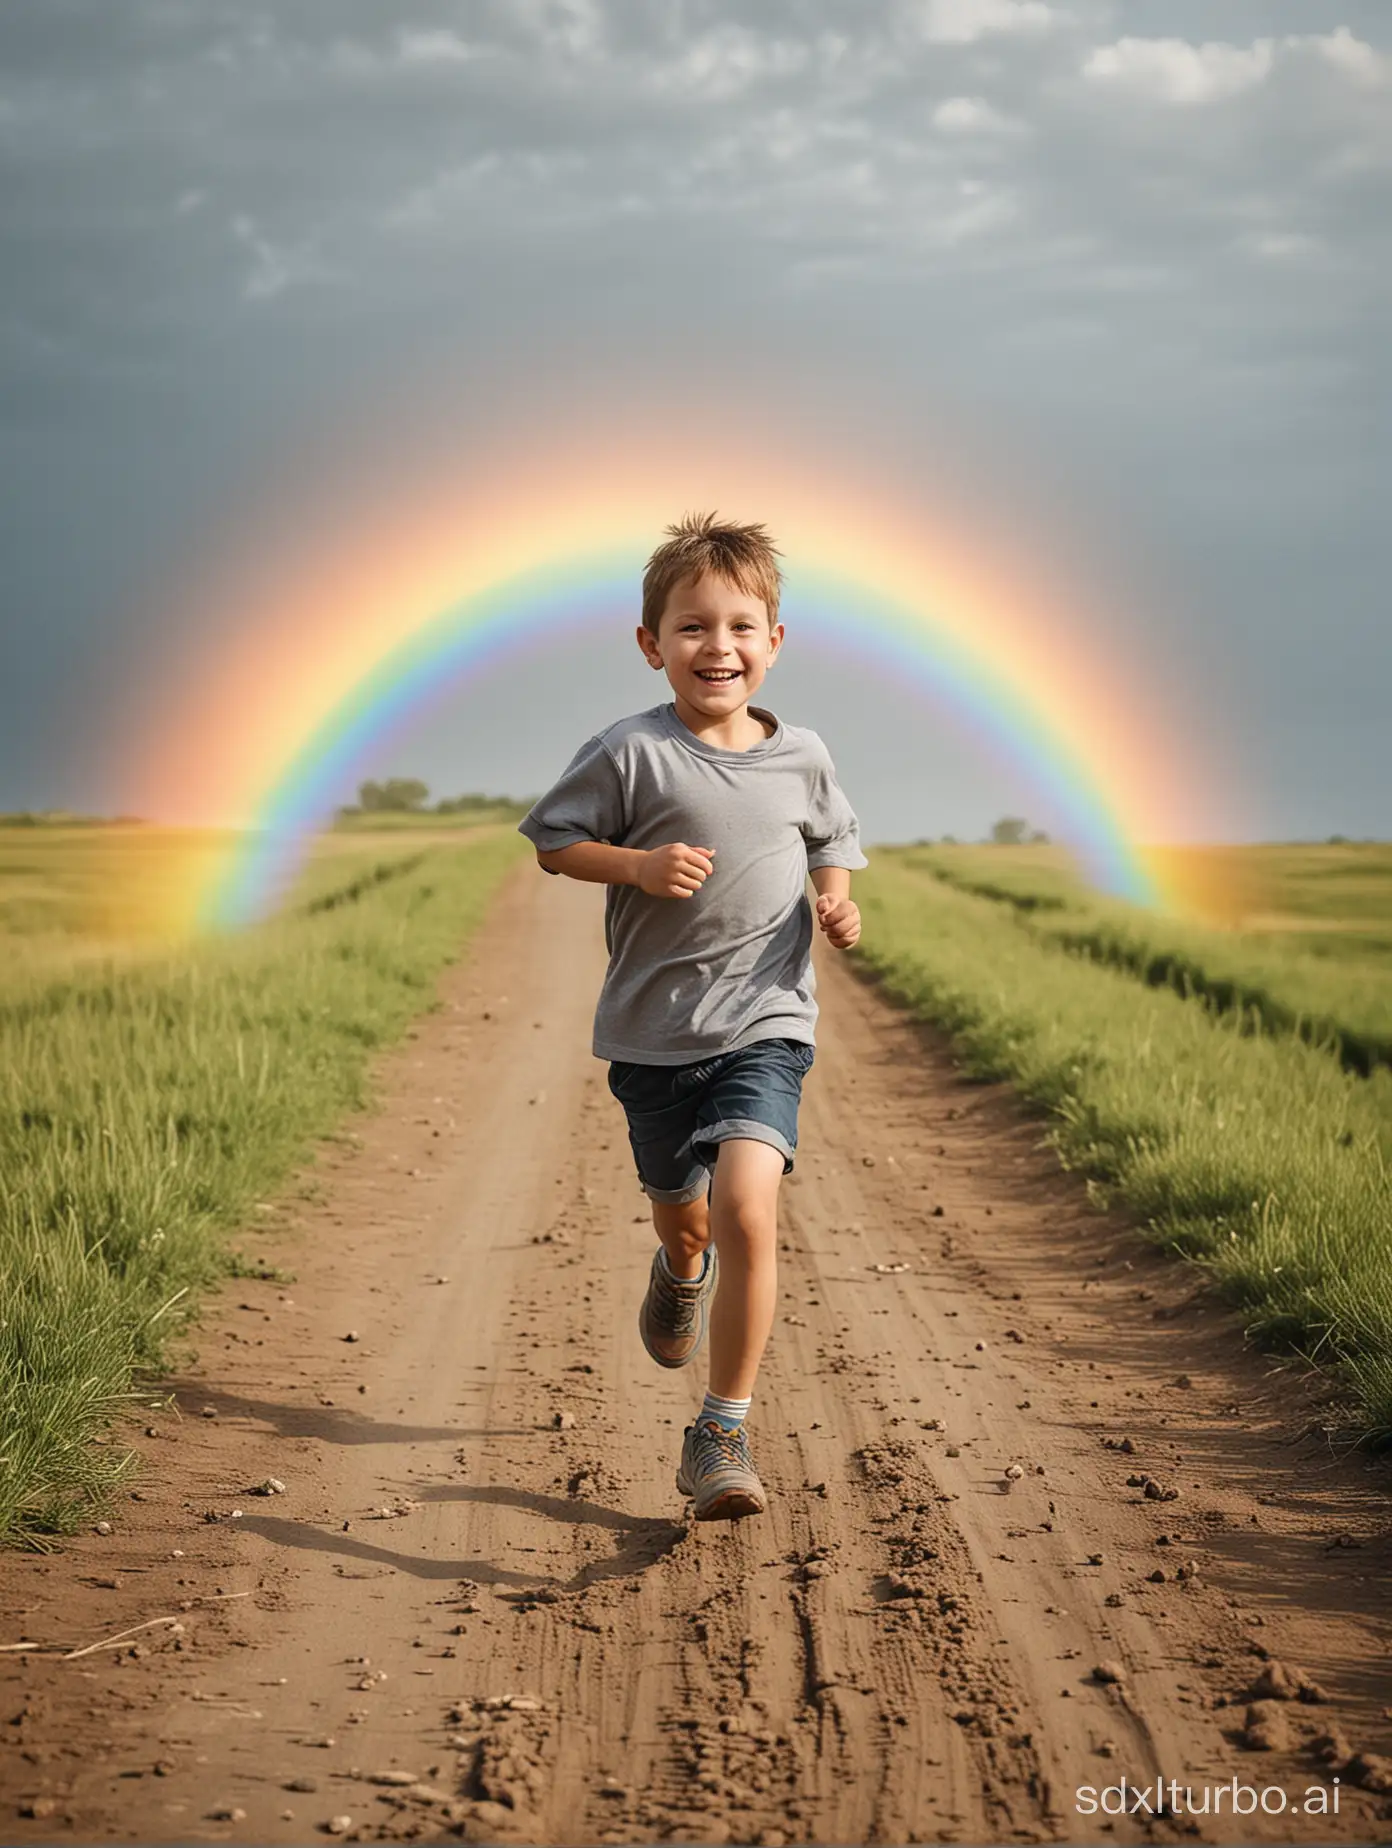 Joyful-Child-Running-Along-Vibrant-Rainbow-Path